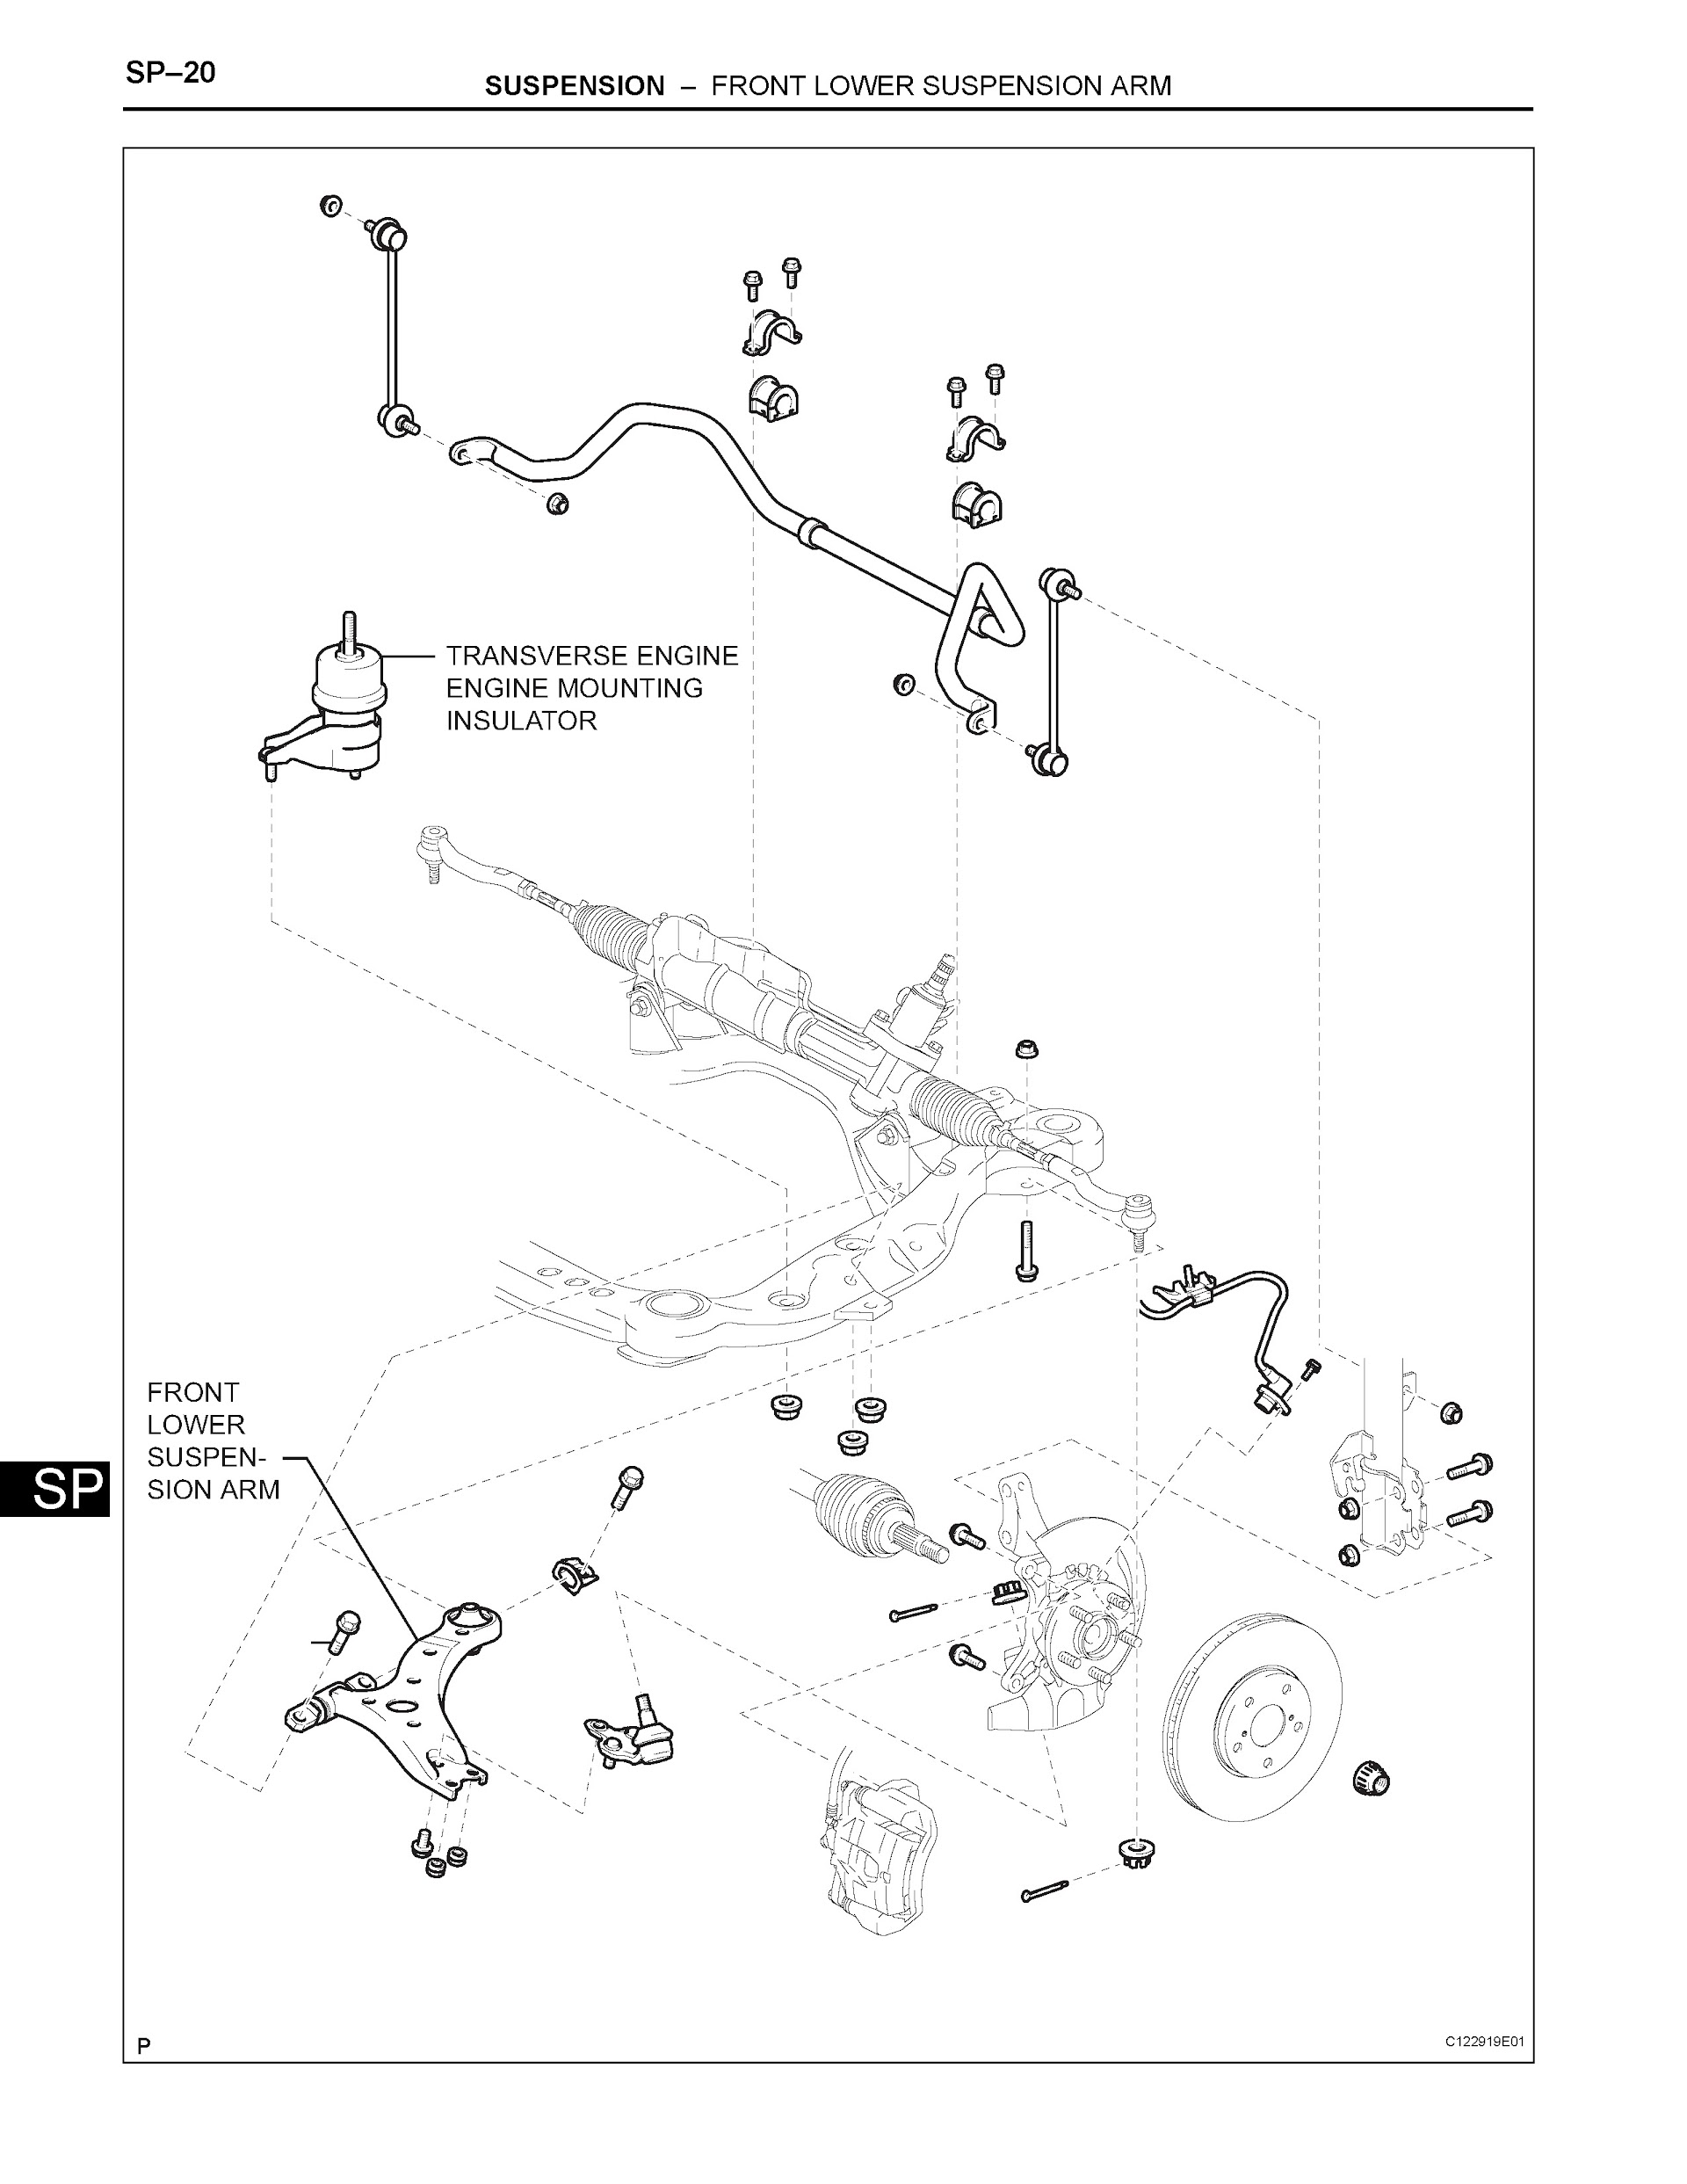 2006 Toyota Avalon Repair Manual, Suspension System